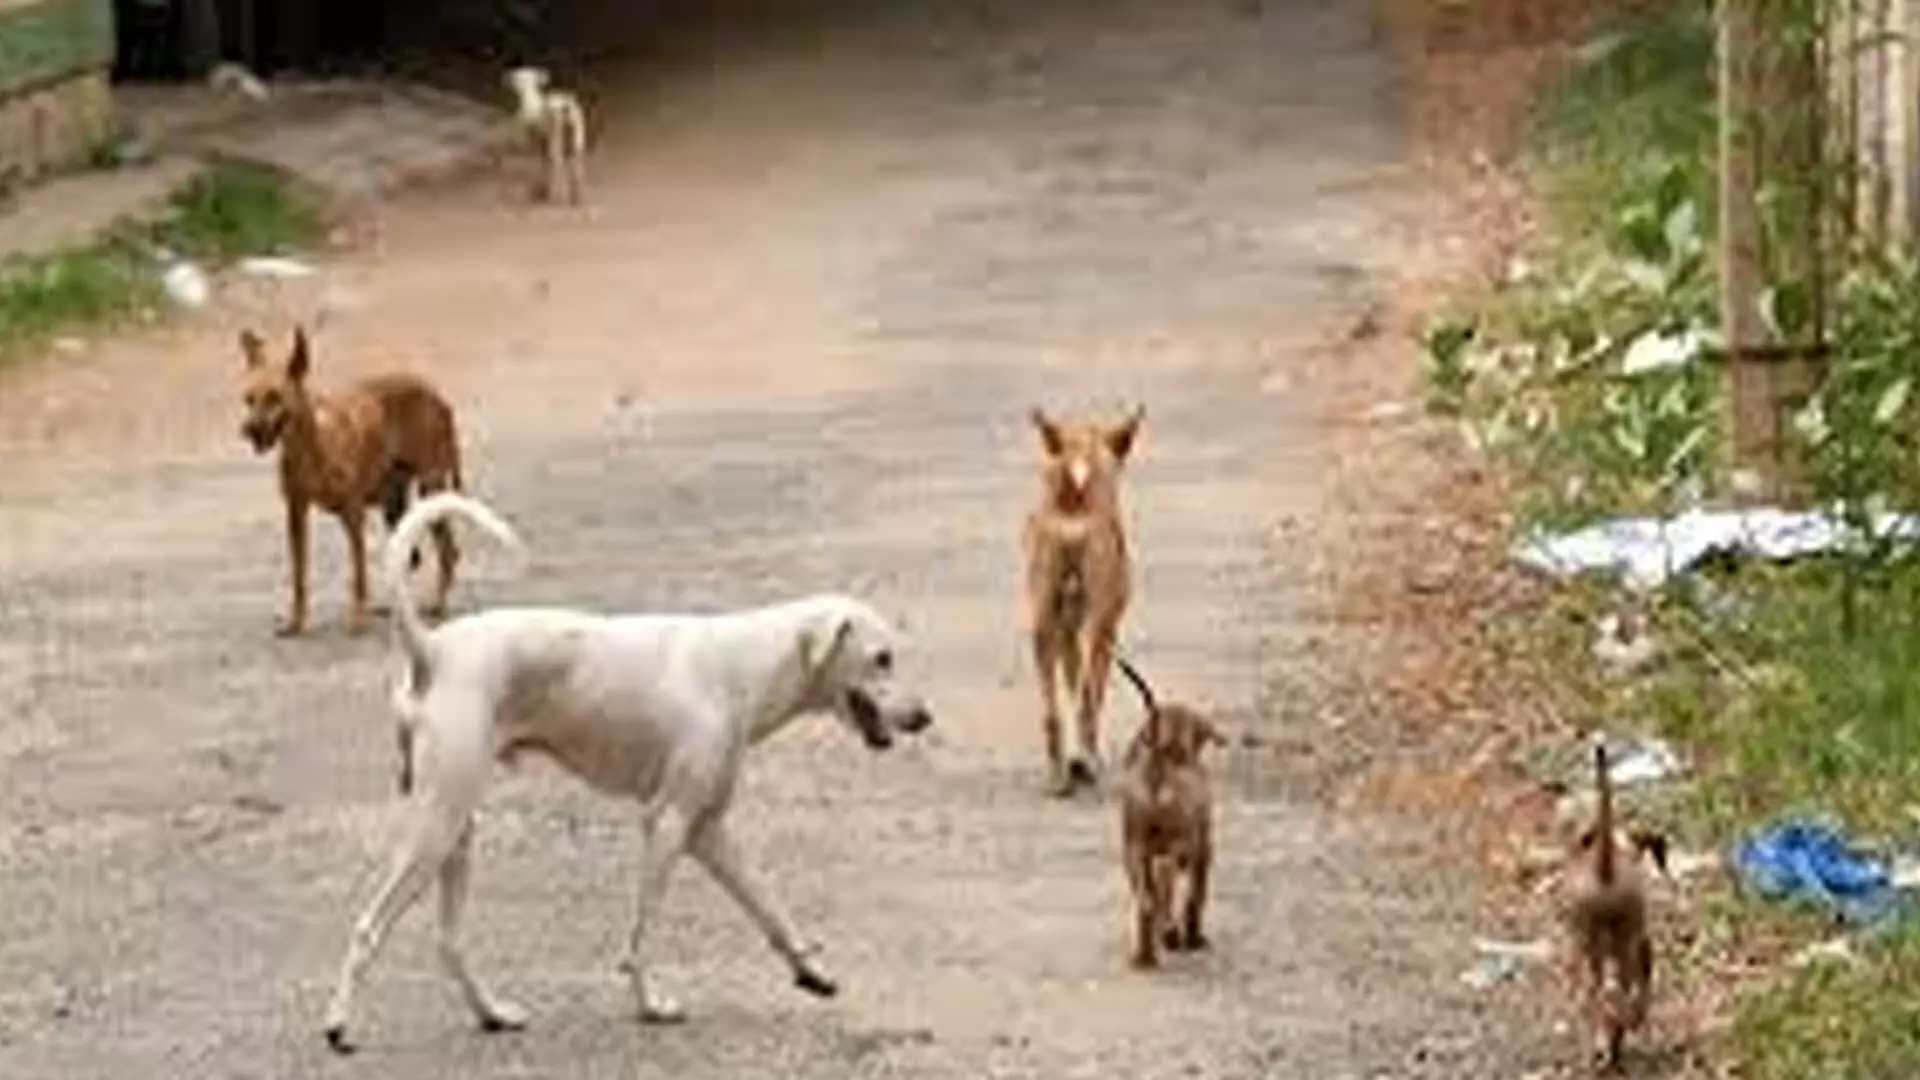 Chennai News: कांची में आवारा कुत्तों द्वारा शिशु पर हमला चिंता का विषय